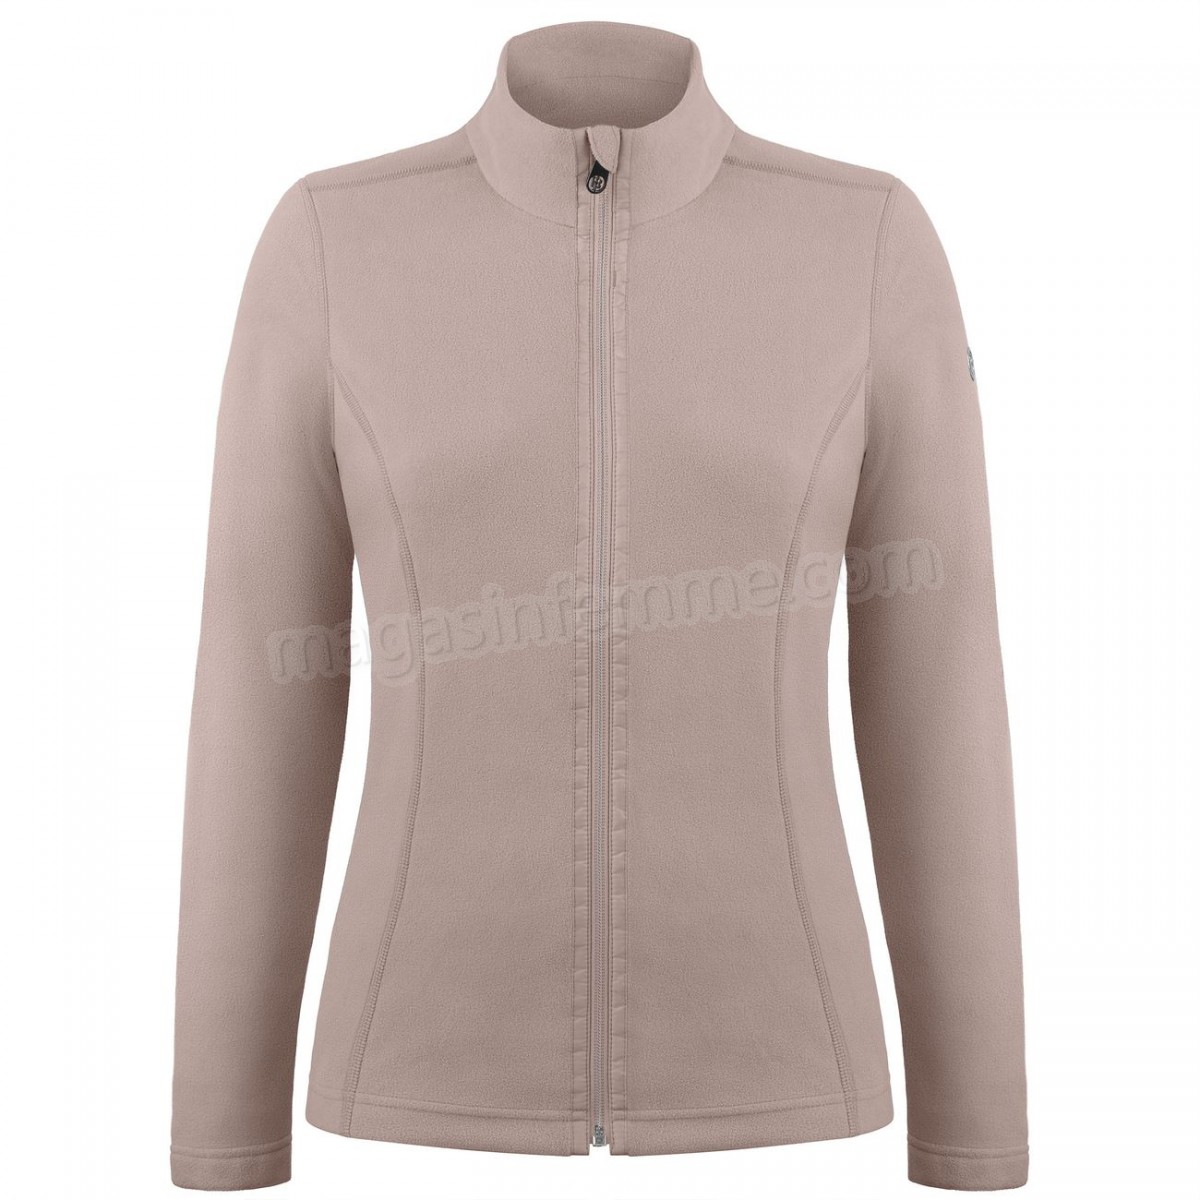 Poivre Blanc-Sports d'hiver femme POIVRE BLANC Veste Polaire Poivre Blanc Fleece Jacket 1500 Rock Brown Femme en solde - -1